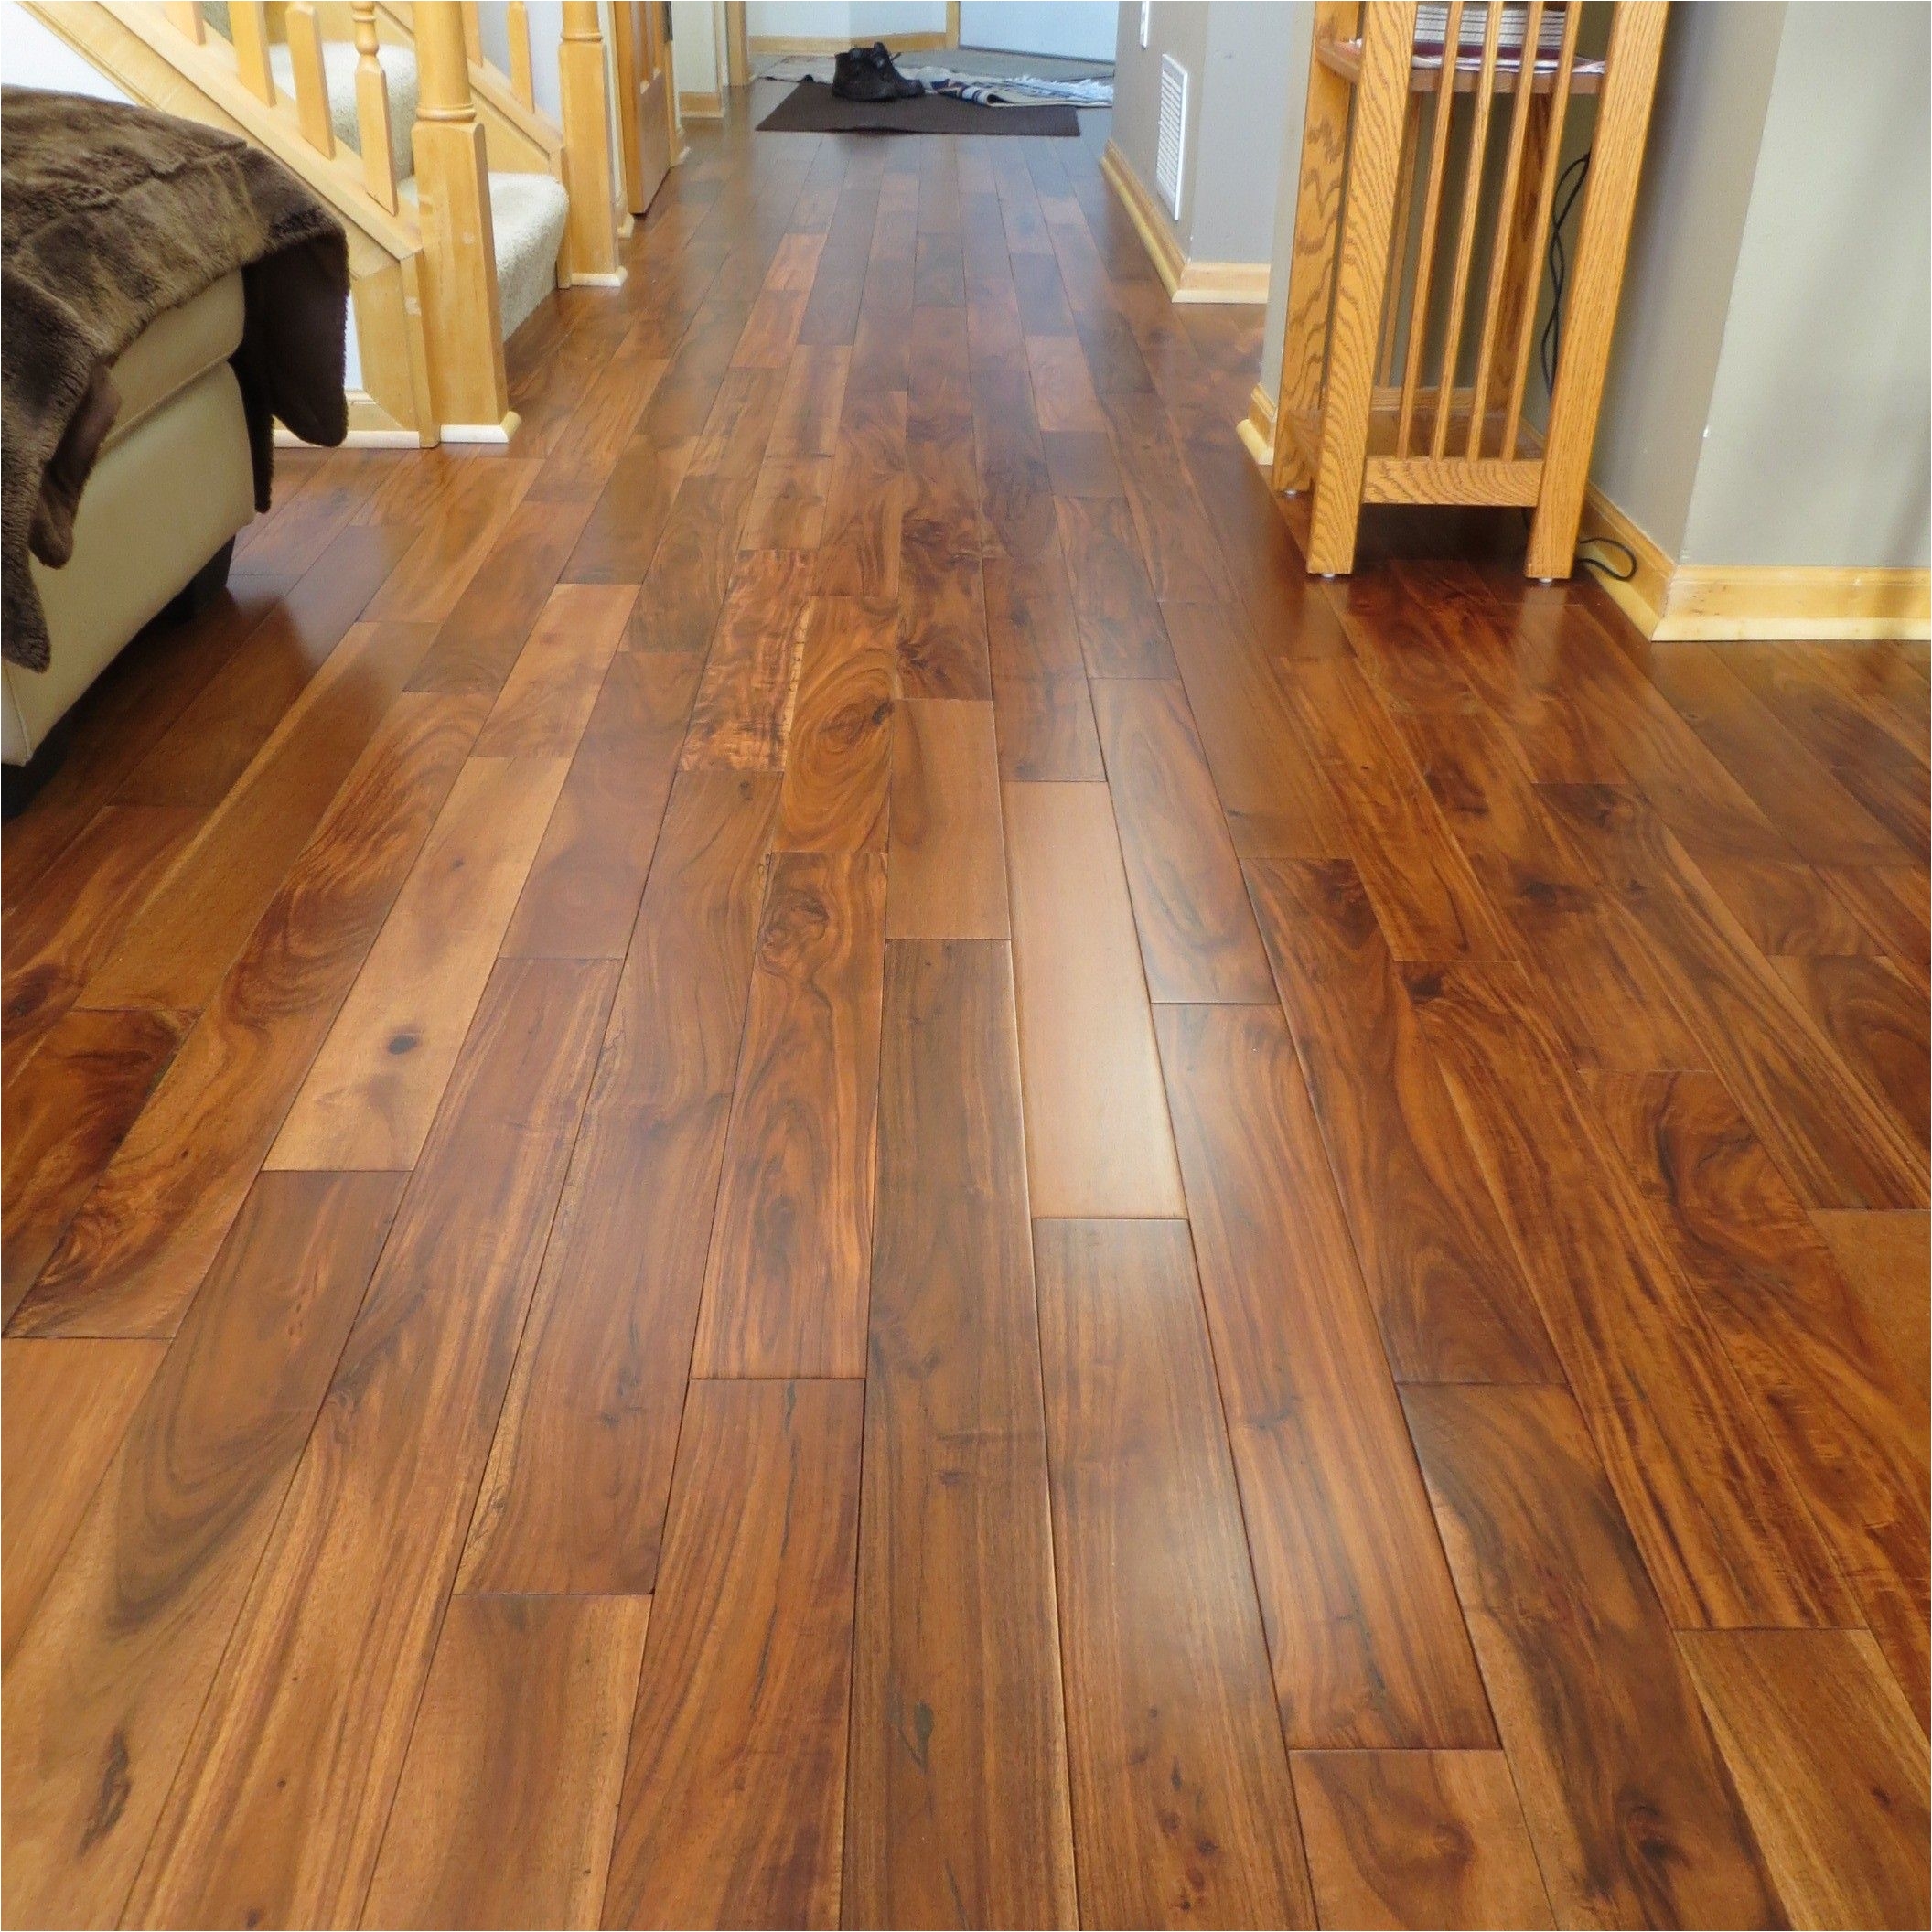 acacia asian walnut bronze plank hardwood flooring i loooooove this floor